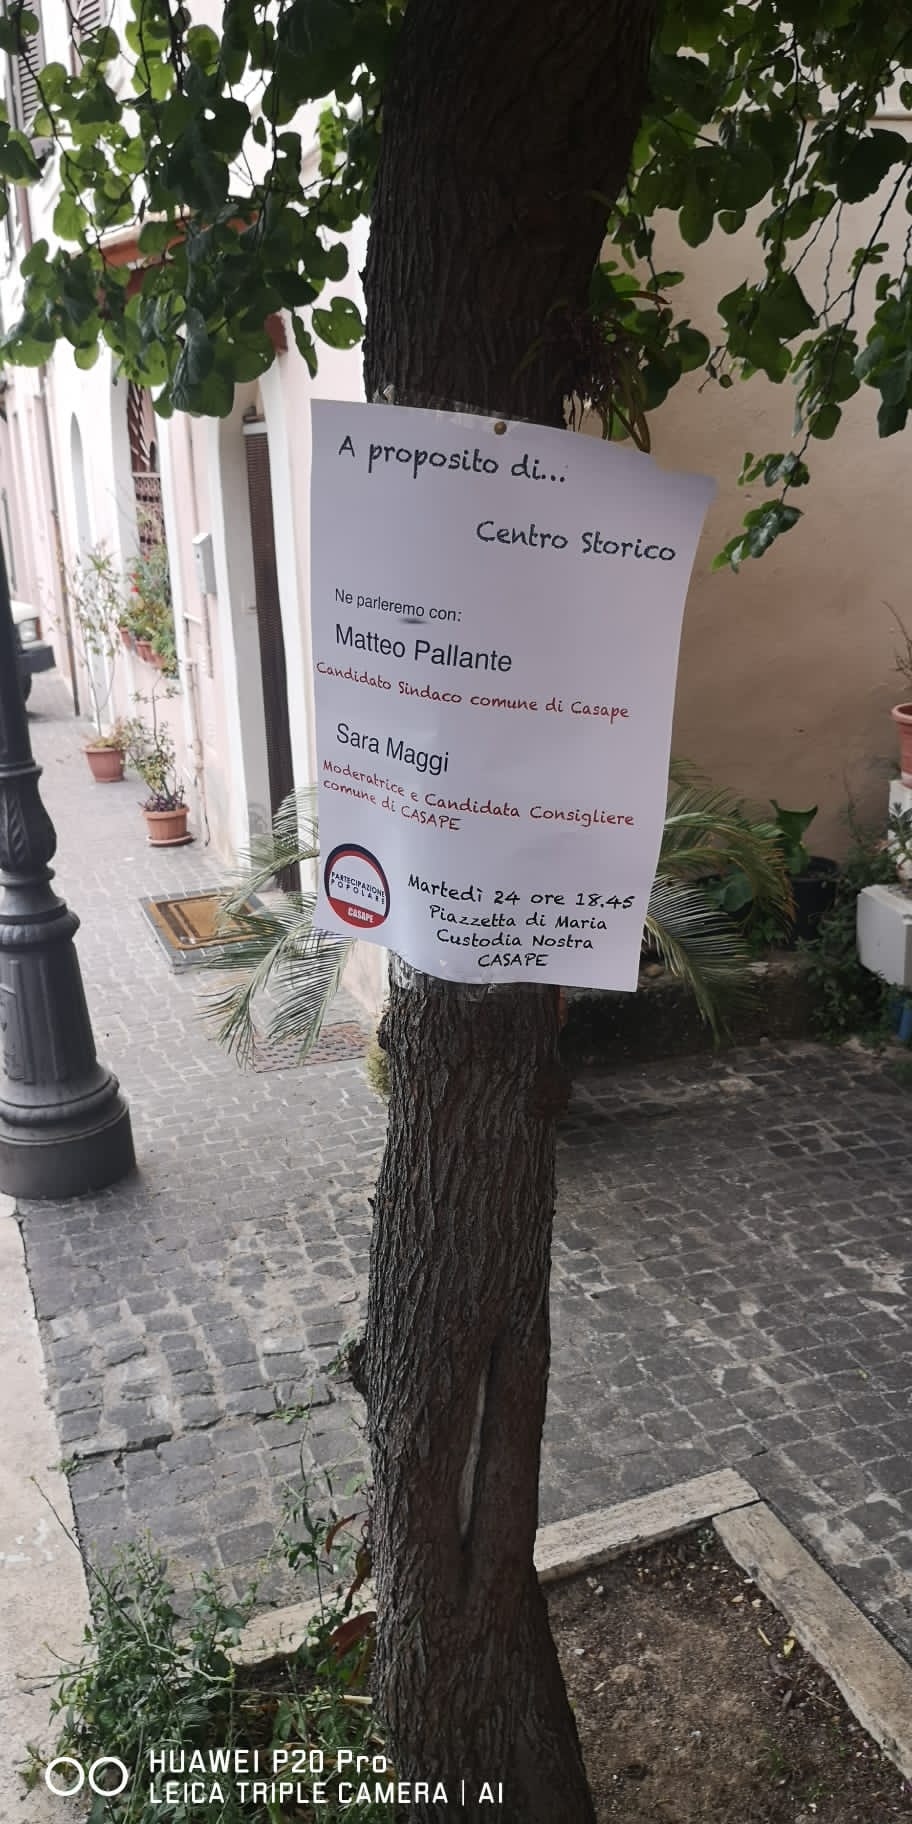 Italia dei Diritti denuncia, a Casape alberi scambiati per plance elettorali